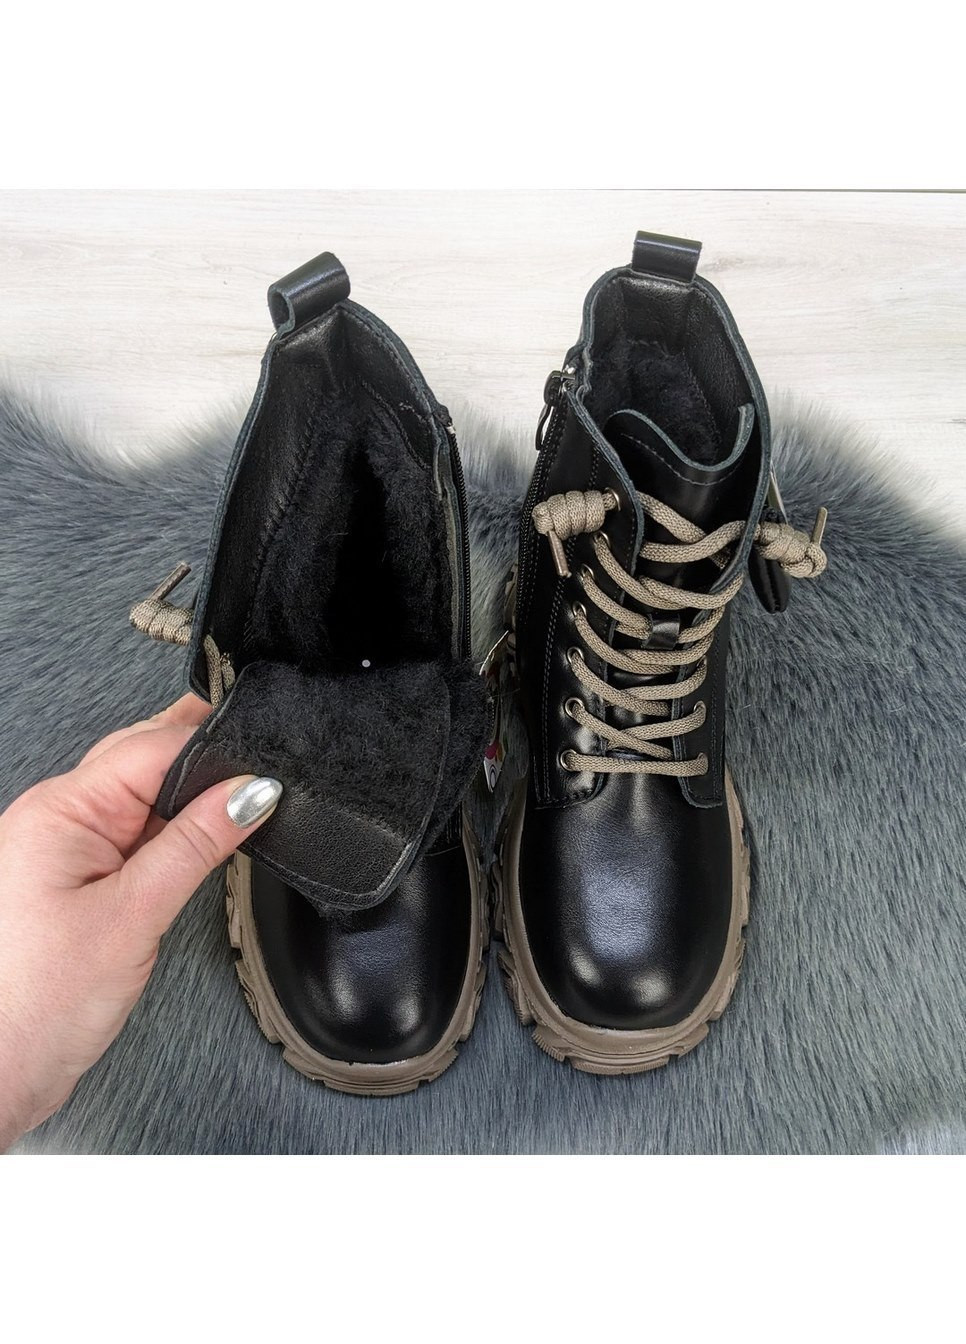 Черные повседневные зимние ботинки подростковые для девочки зимние Jong Golf